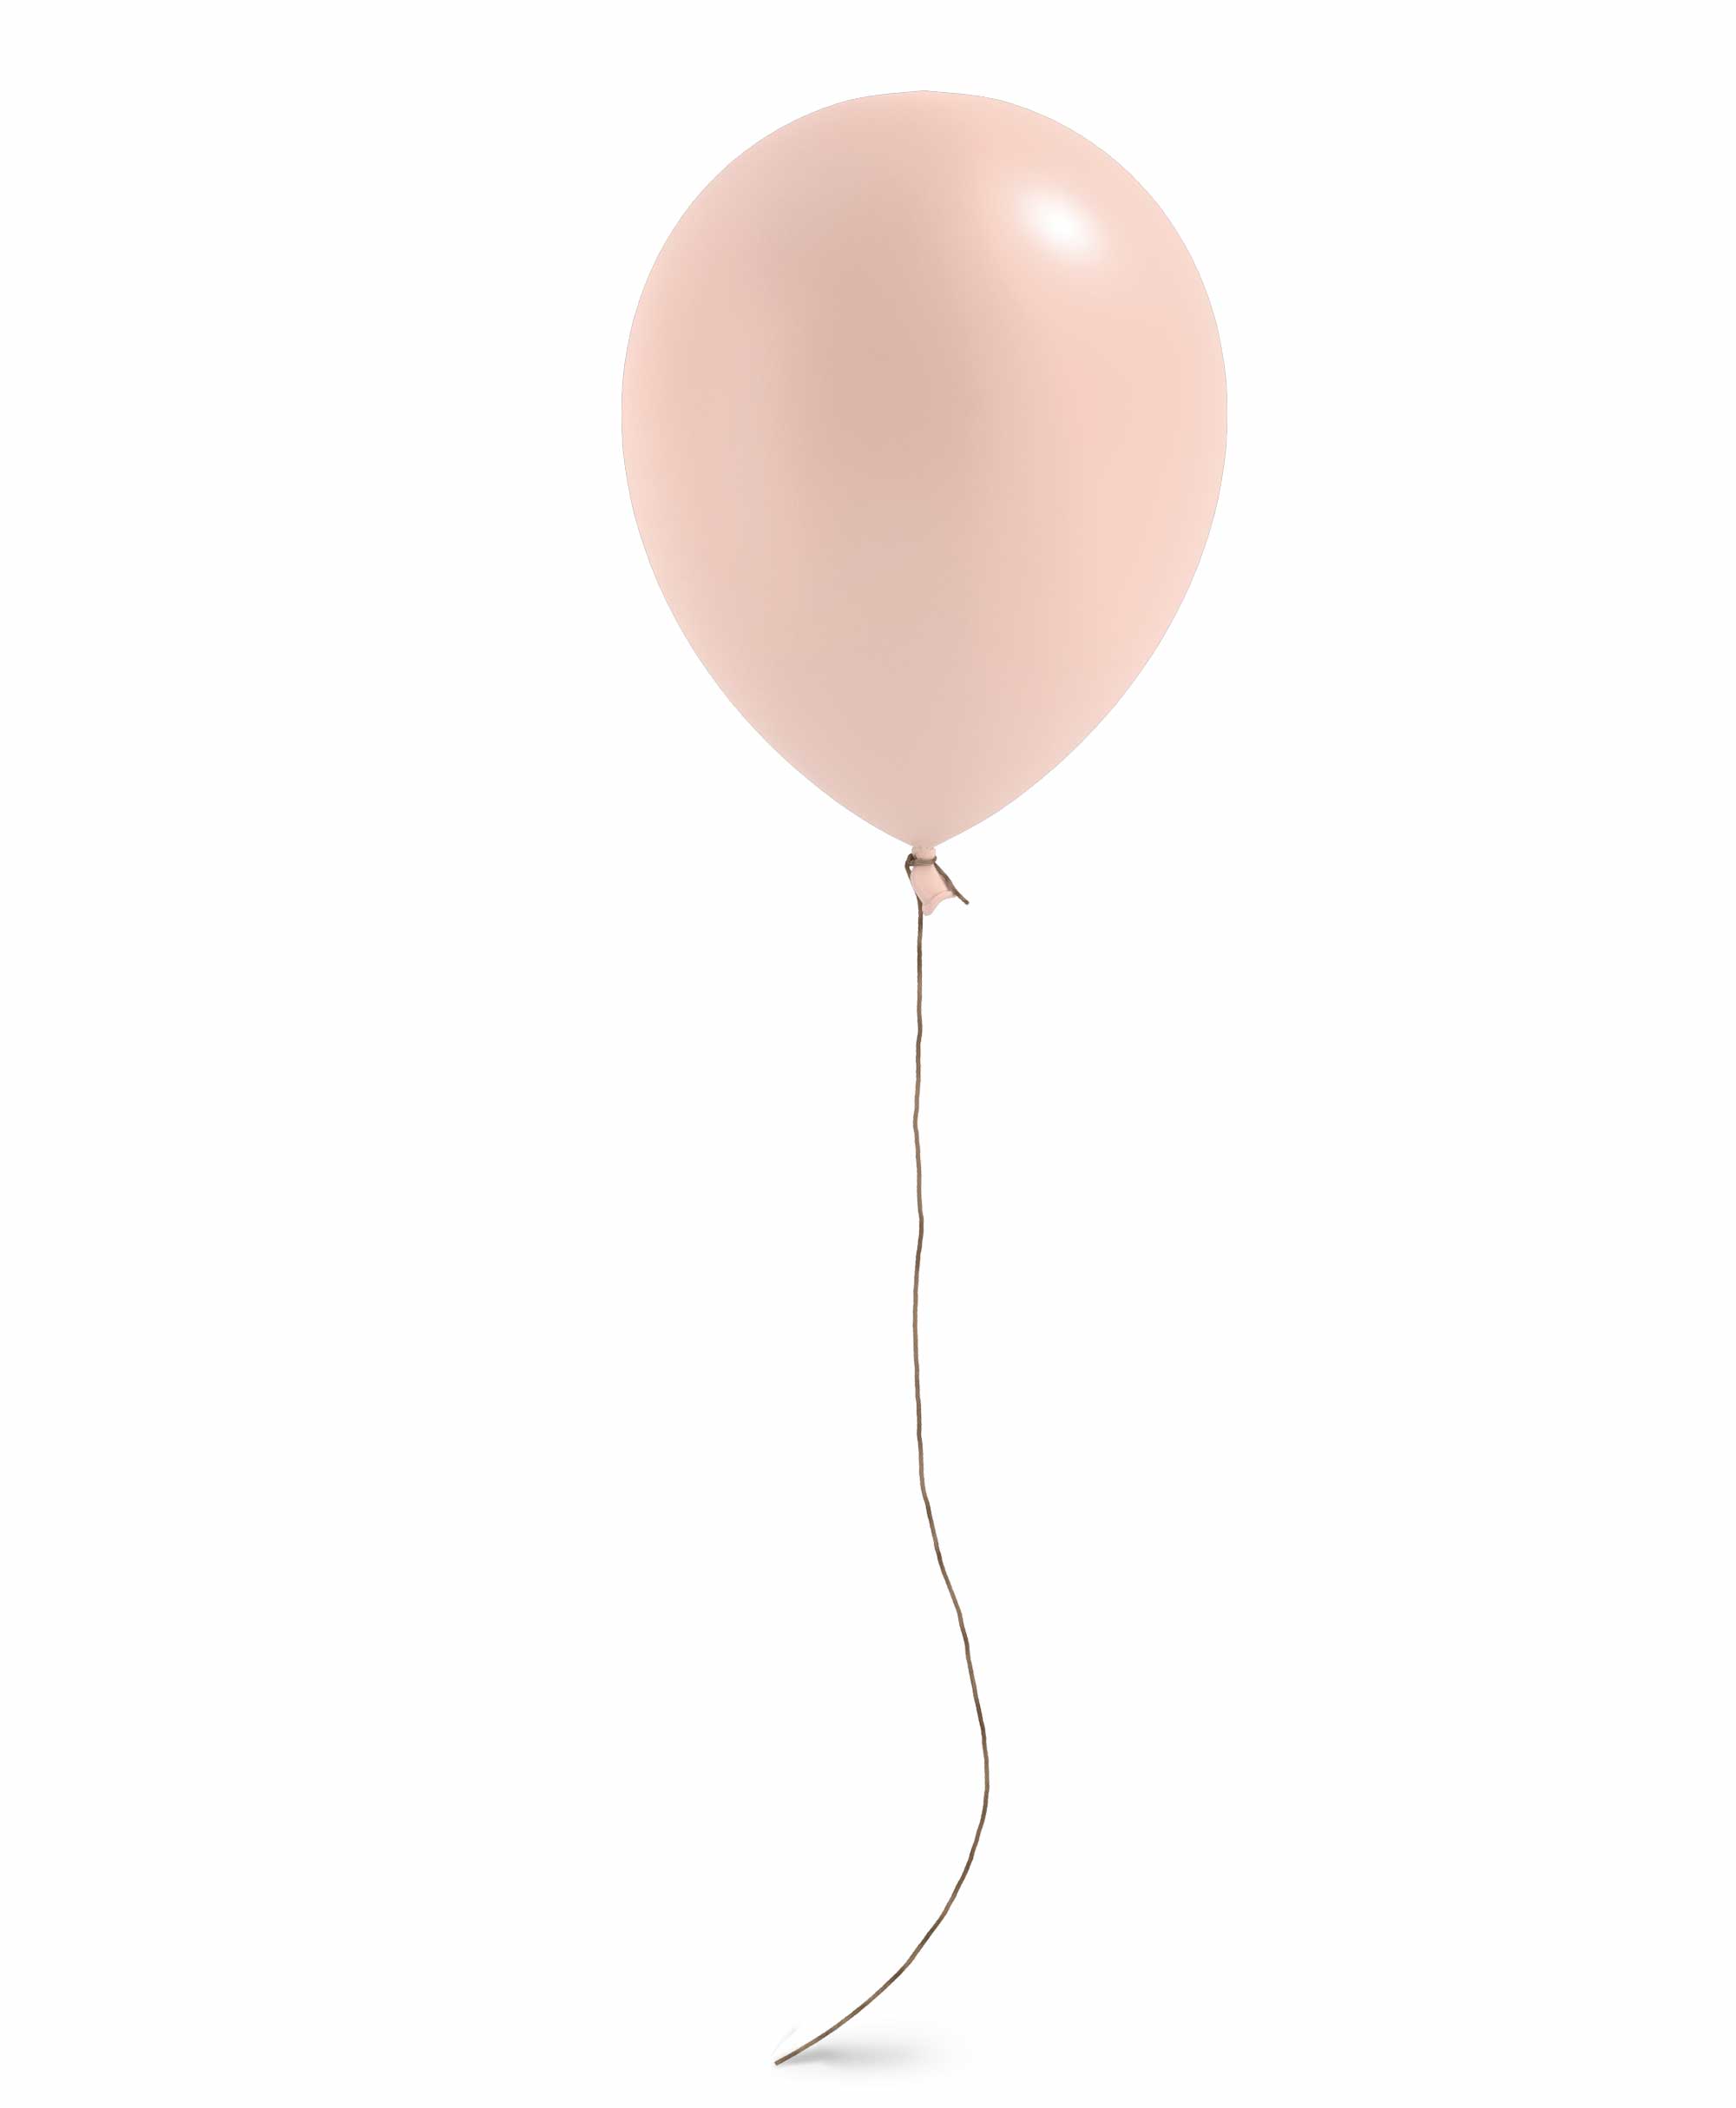 Peach balloon 11" - Blush theme